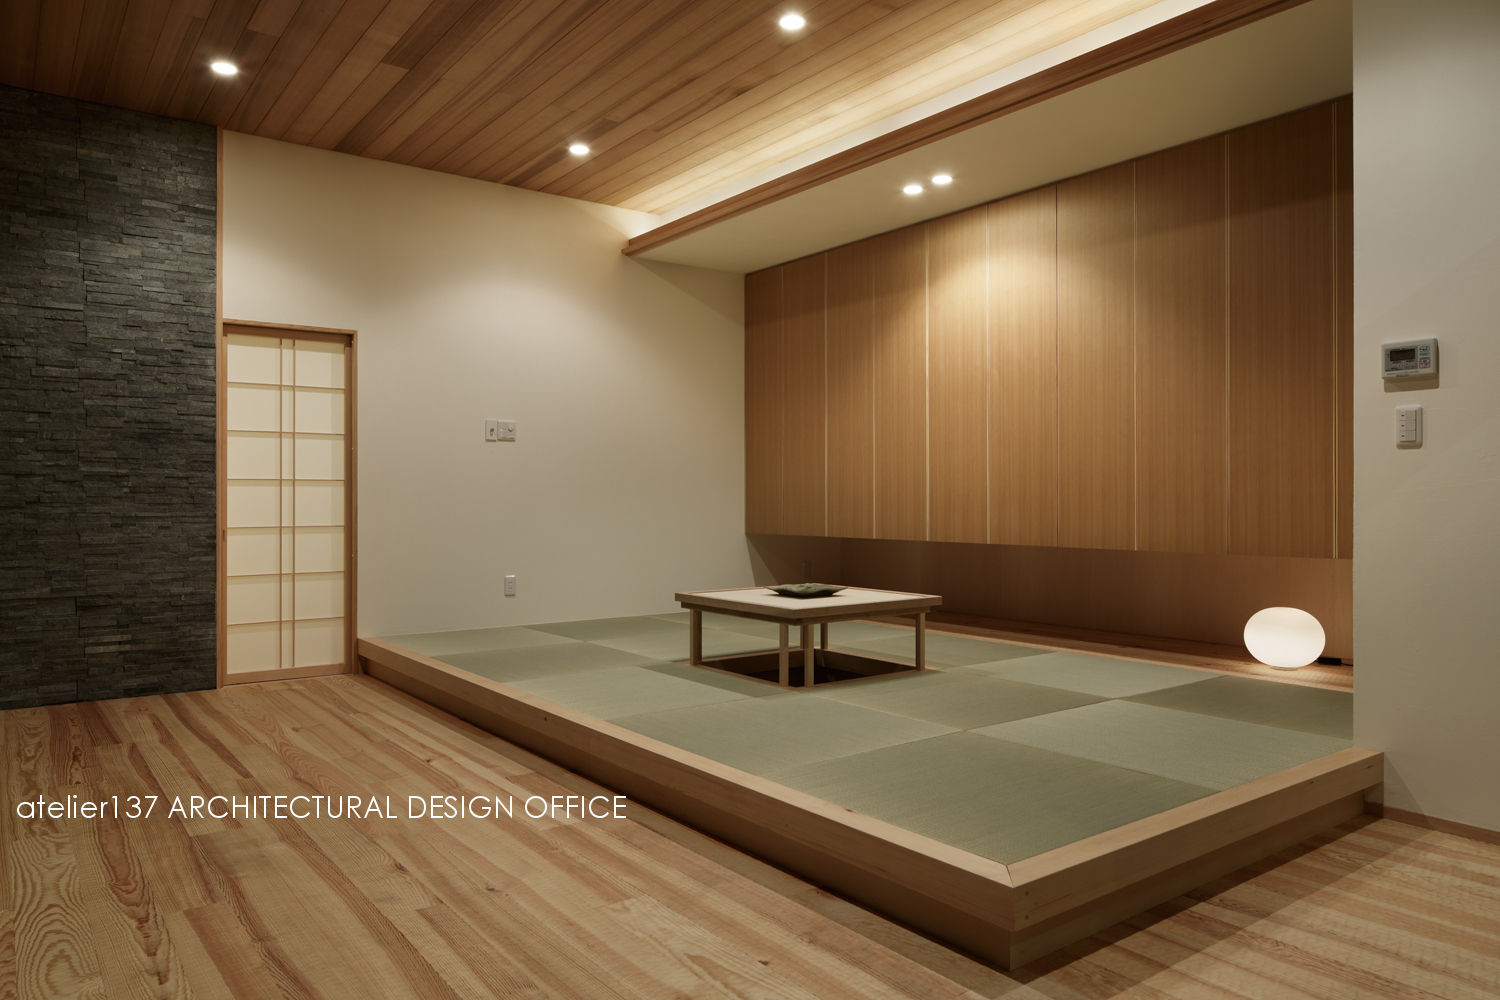 040軽井沢Cさんの家（増築）, atelier137 ARCHITECTURAL DESIGN OFFICE atelier137 ARCHITECTURAL DESIGN OFFICE Living room